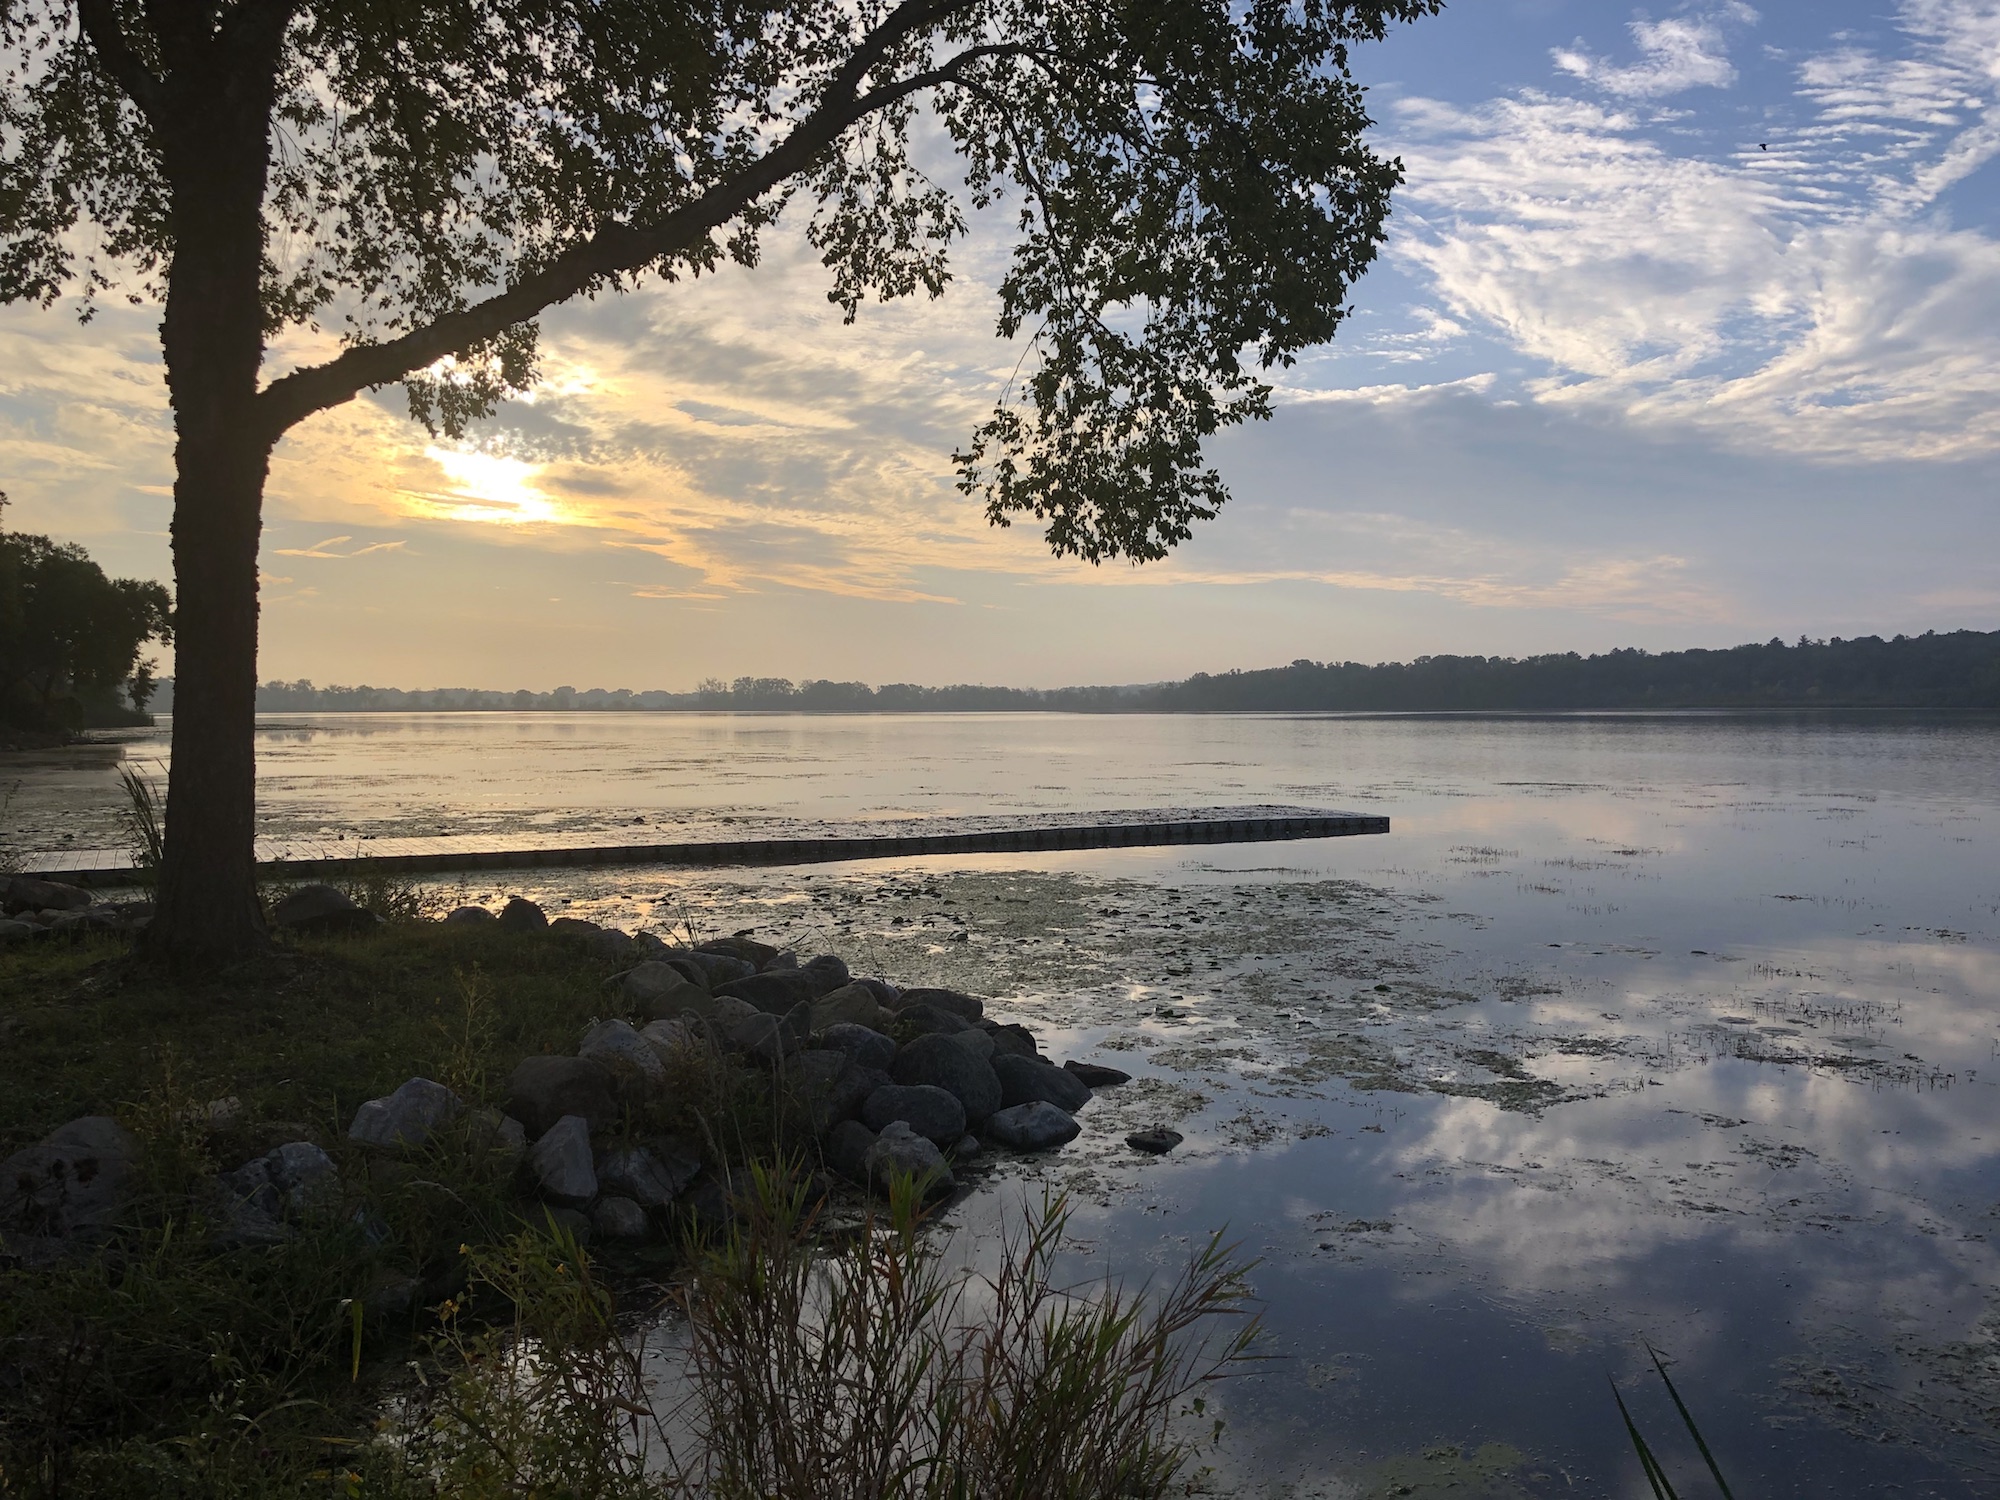 Lake Wingra on September 18, 2019.